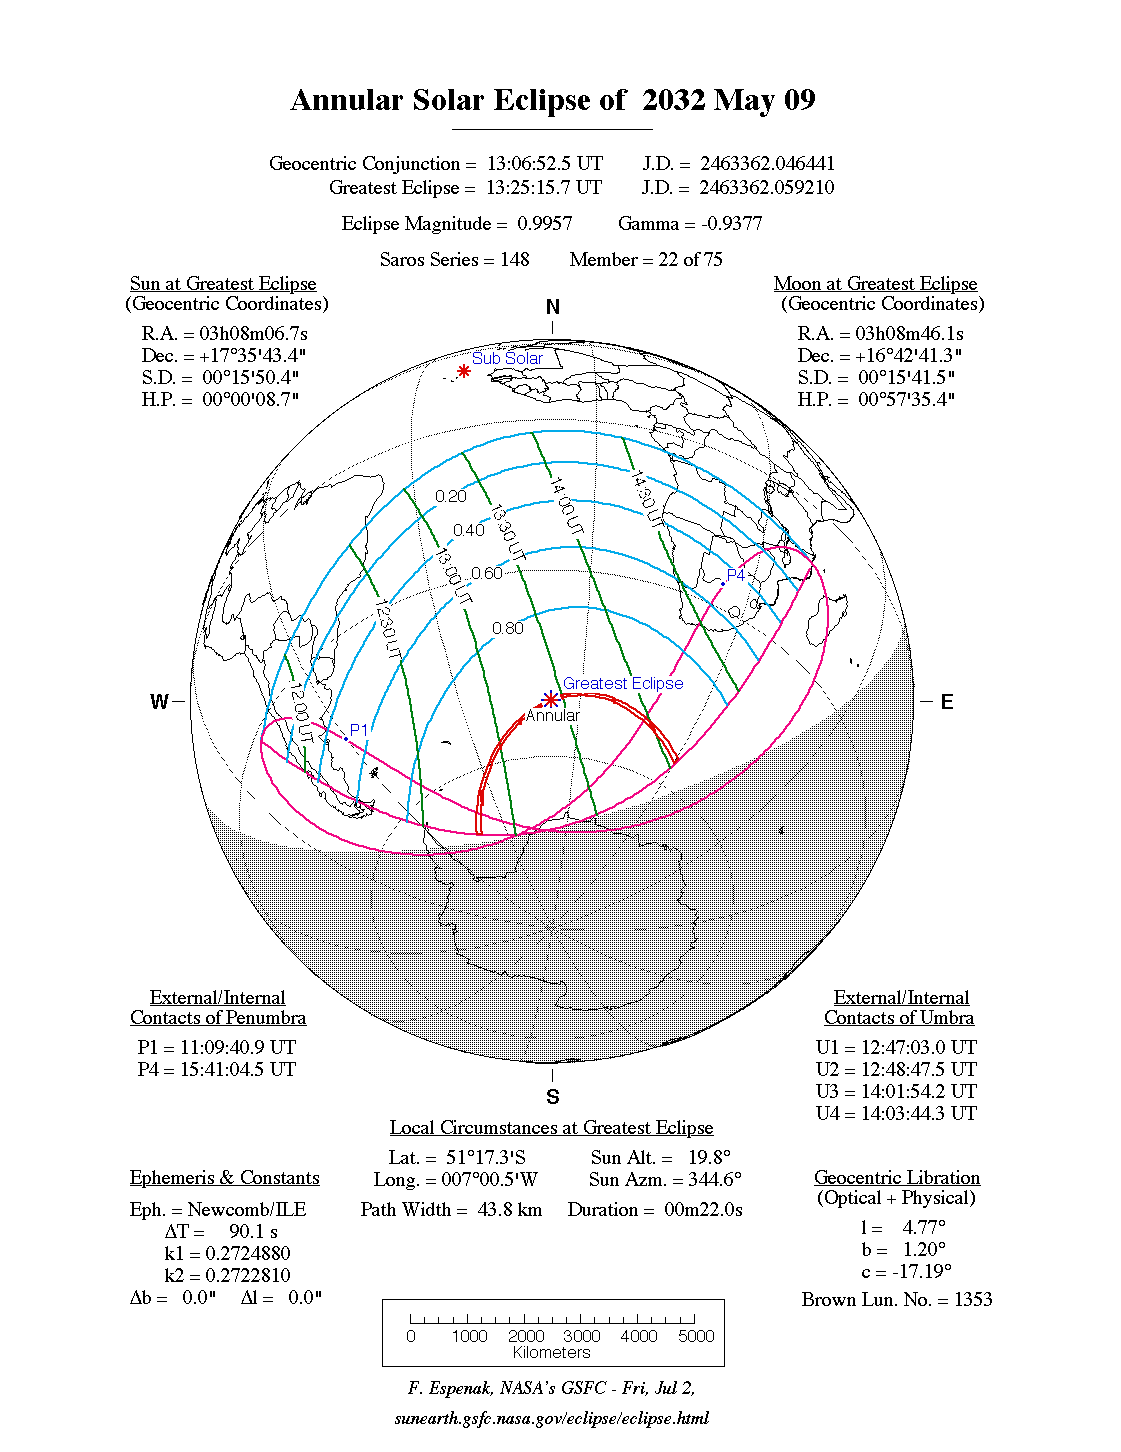 Verlauf der Ringförmigen Sonnenfinsternis am 09.05.2032